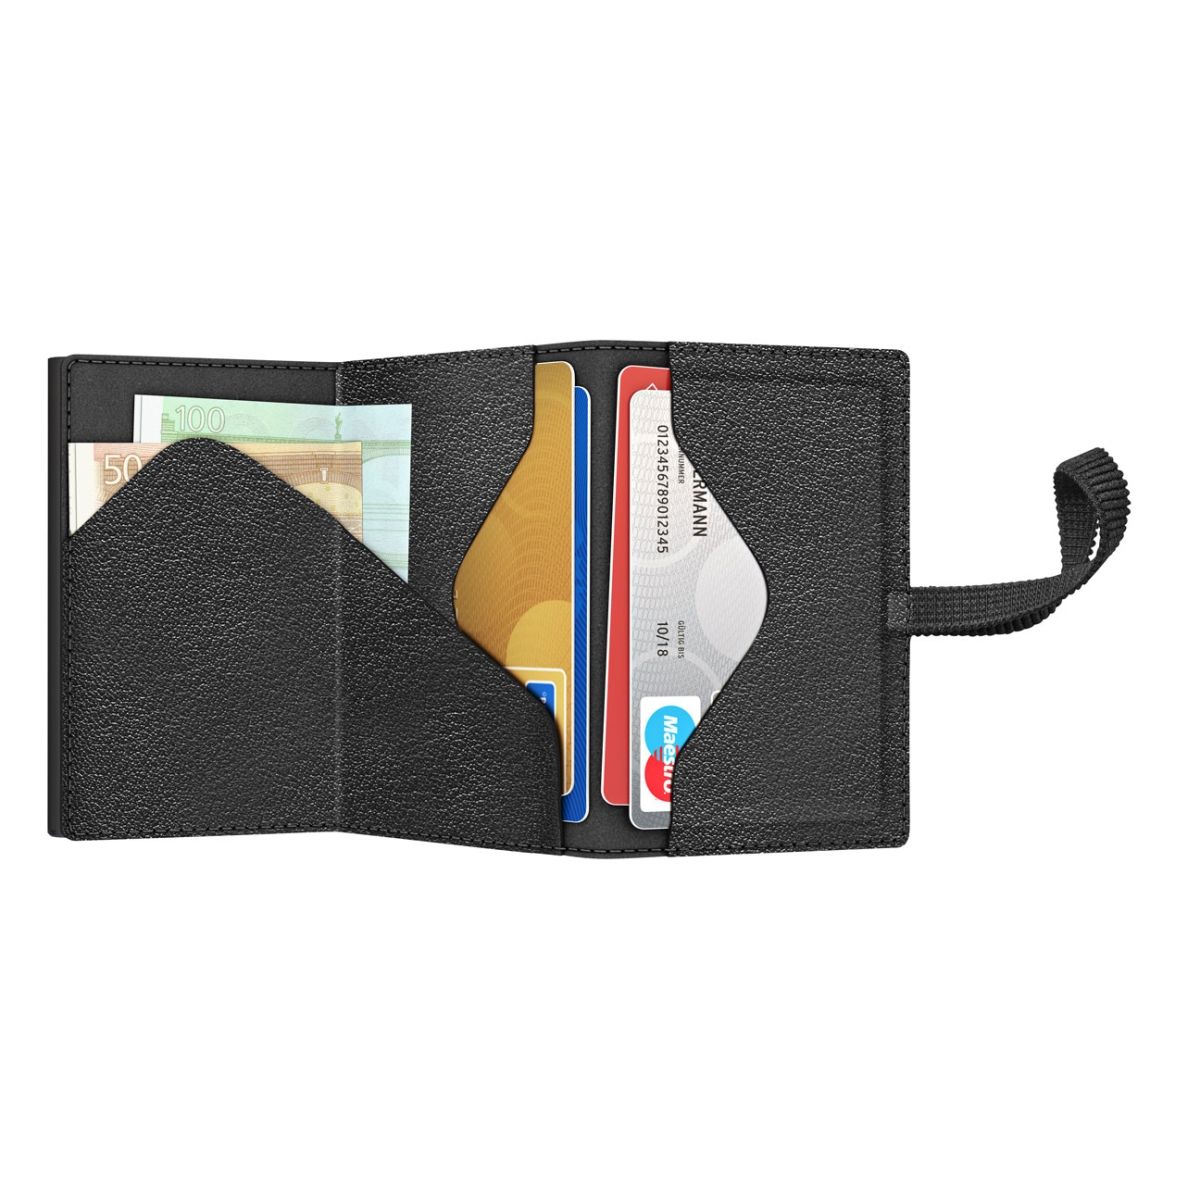 TRU VIRTU Click n Slide Sleek Wallet With Strap - Nappa Black